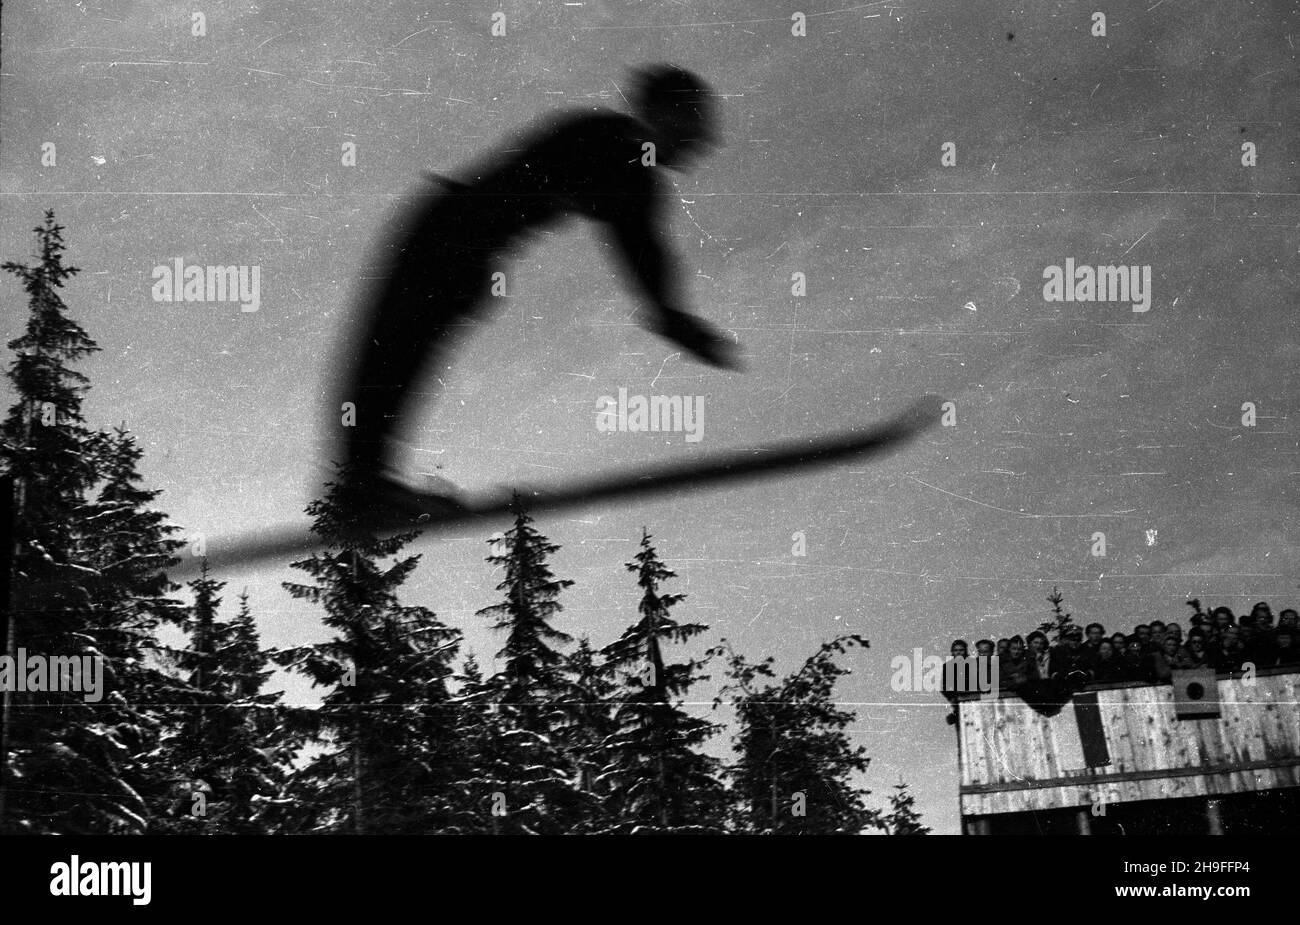 Karpacz, 1948-02. W dniach 19-20 lutego odby³y siê XXIII Narciarskie Mistrzostwa Polski.  bk  PAP      Karpacz, Feb. 1948. The 23rd Poland's Skiing Championship was held on February 19-20.   bk  PAP Stock Photo